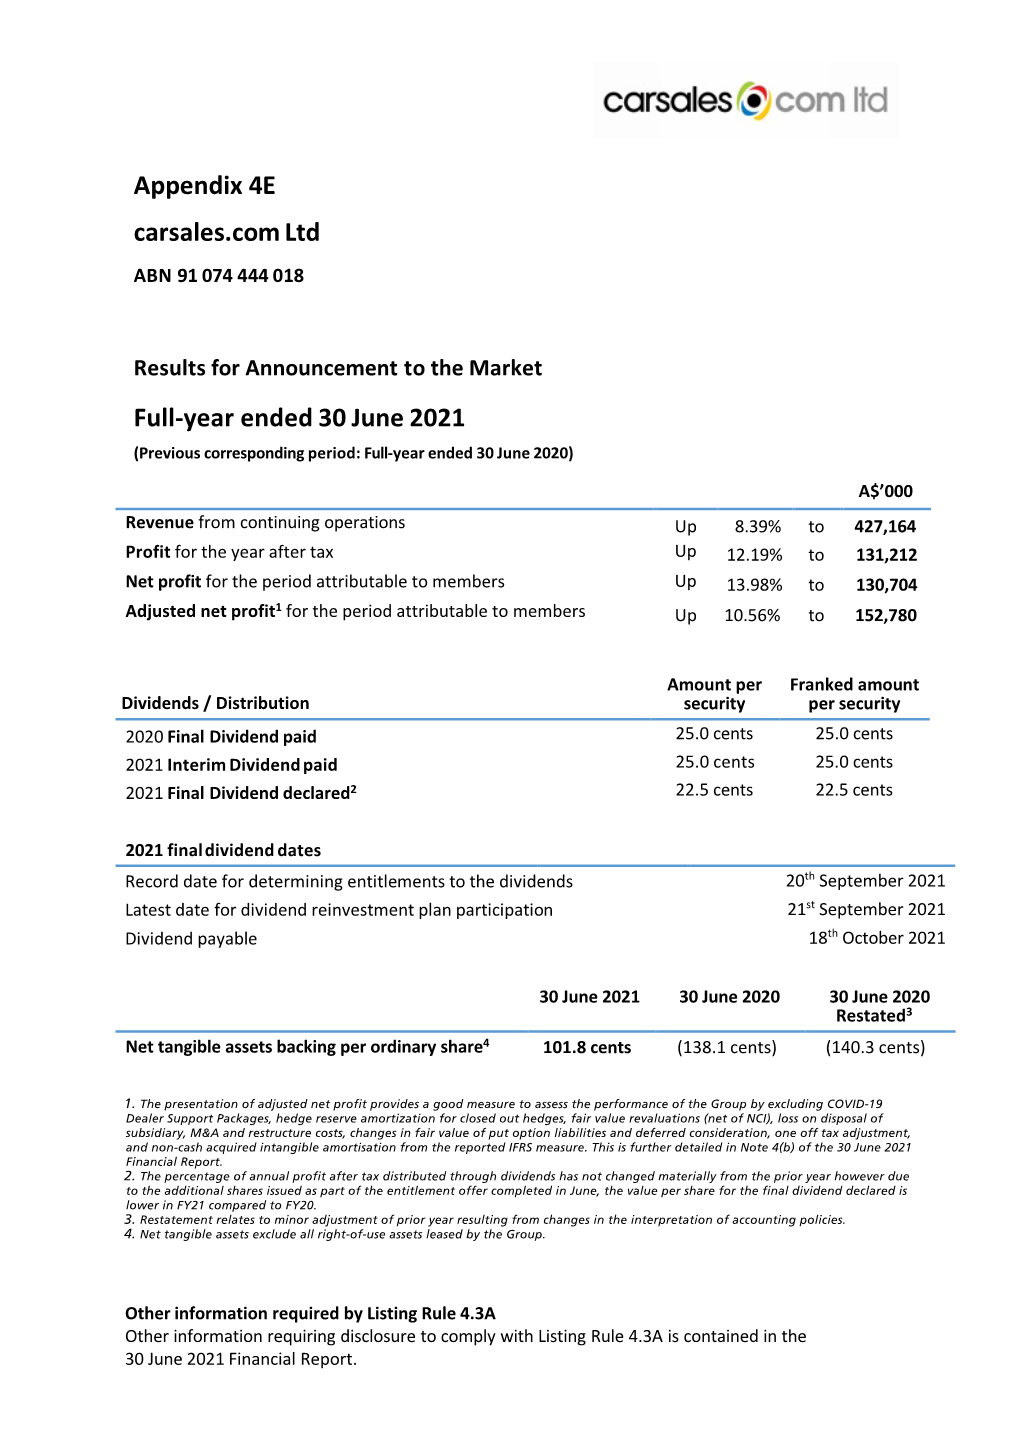 Appendix 4E Carsales.Com Ltd Full-Year Ended 30 June 2021